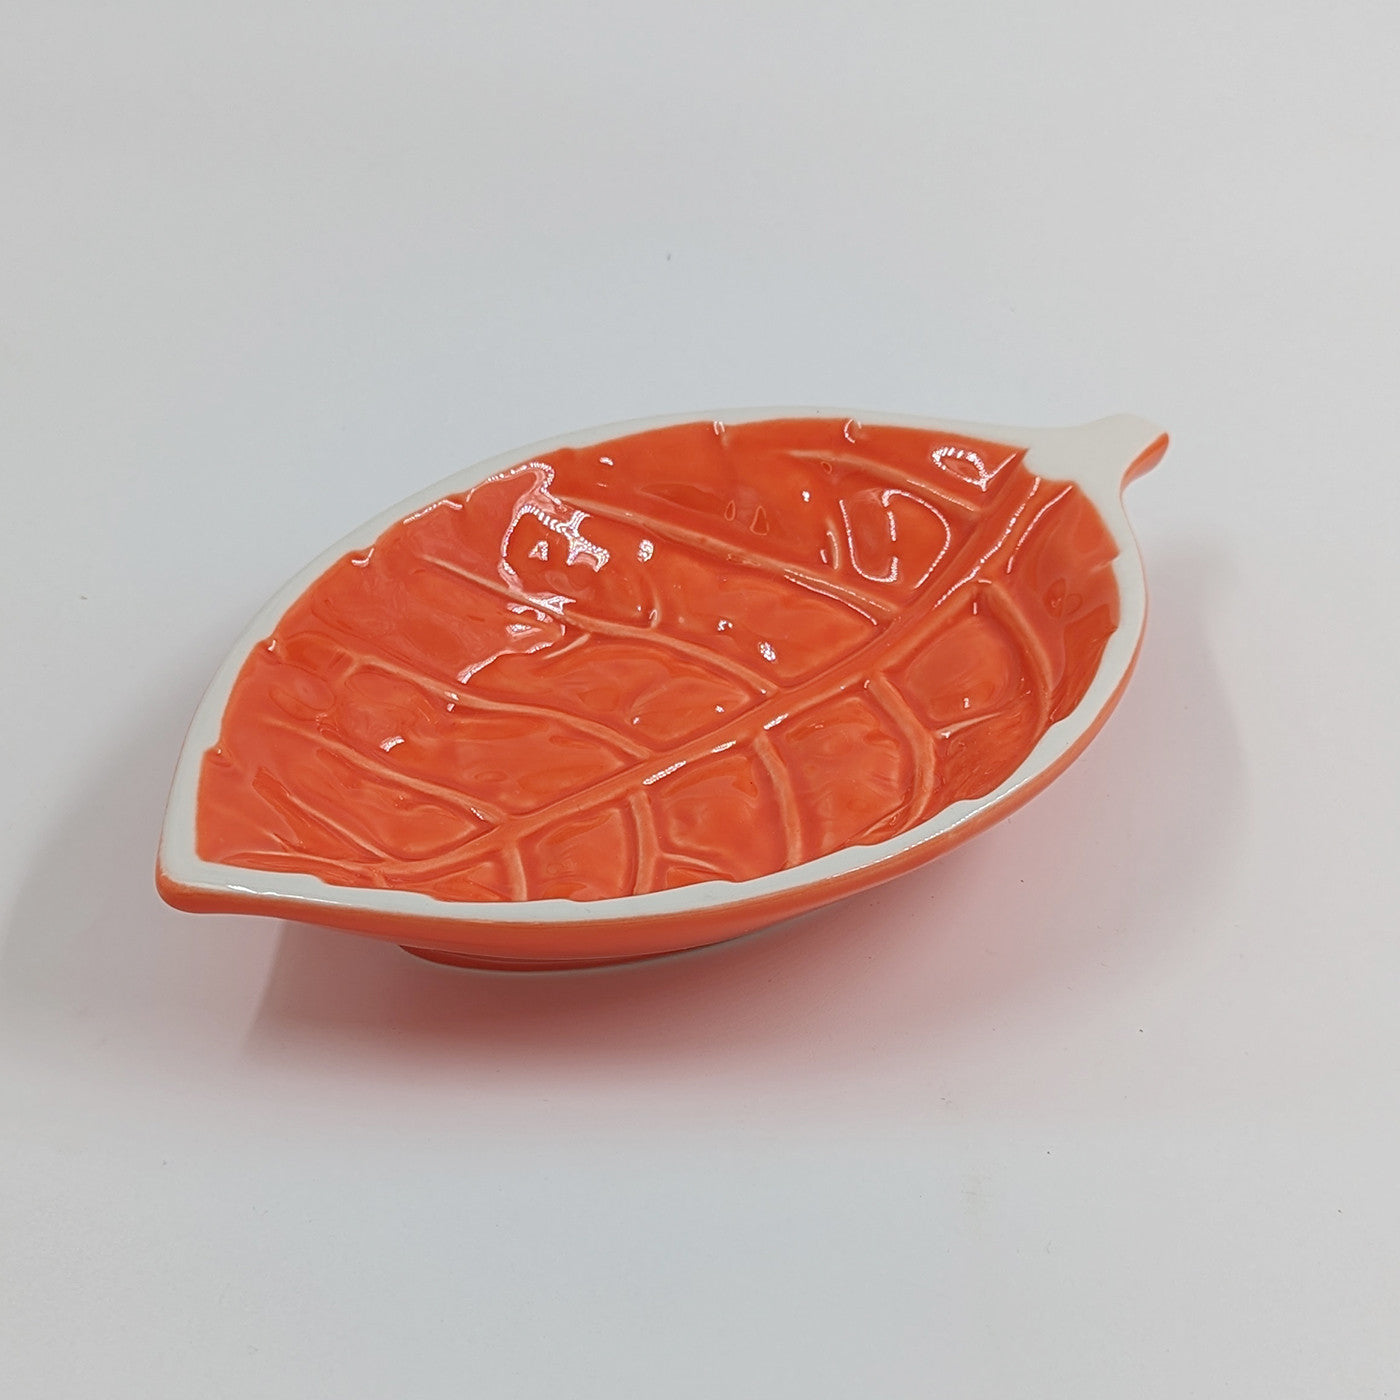 Blad - Skål, Orange - 21 cm